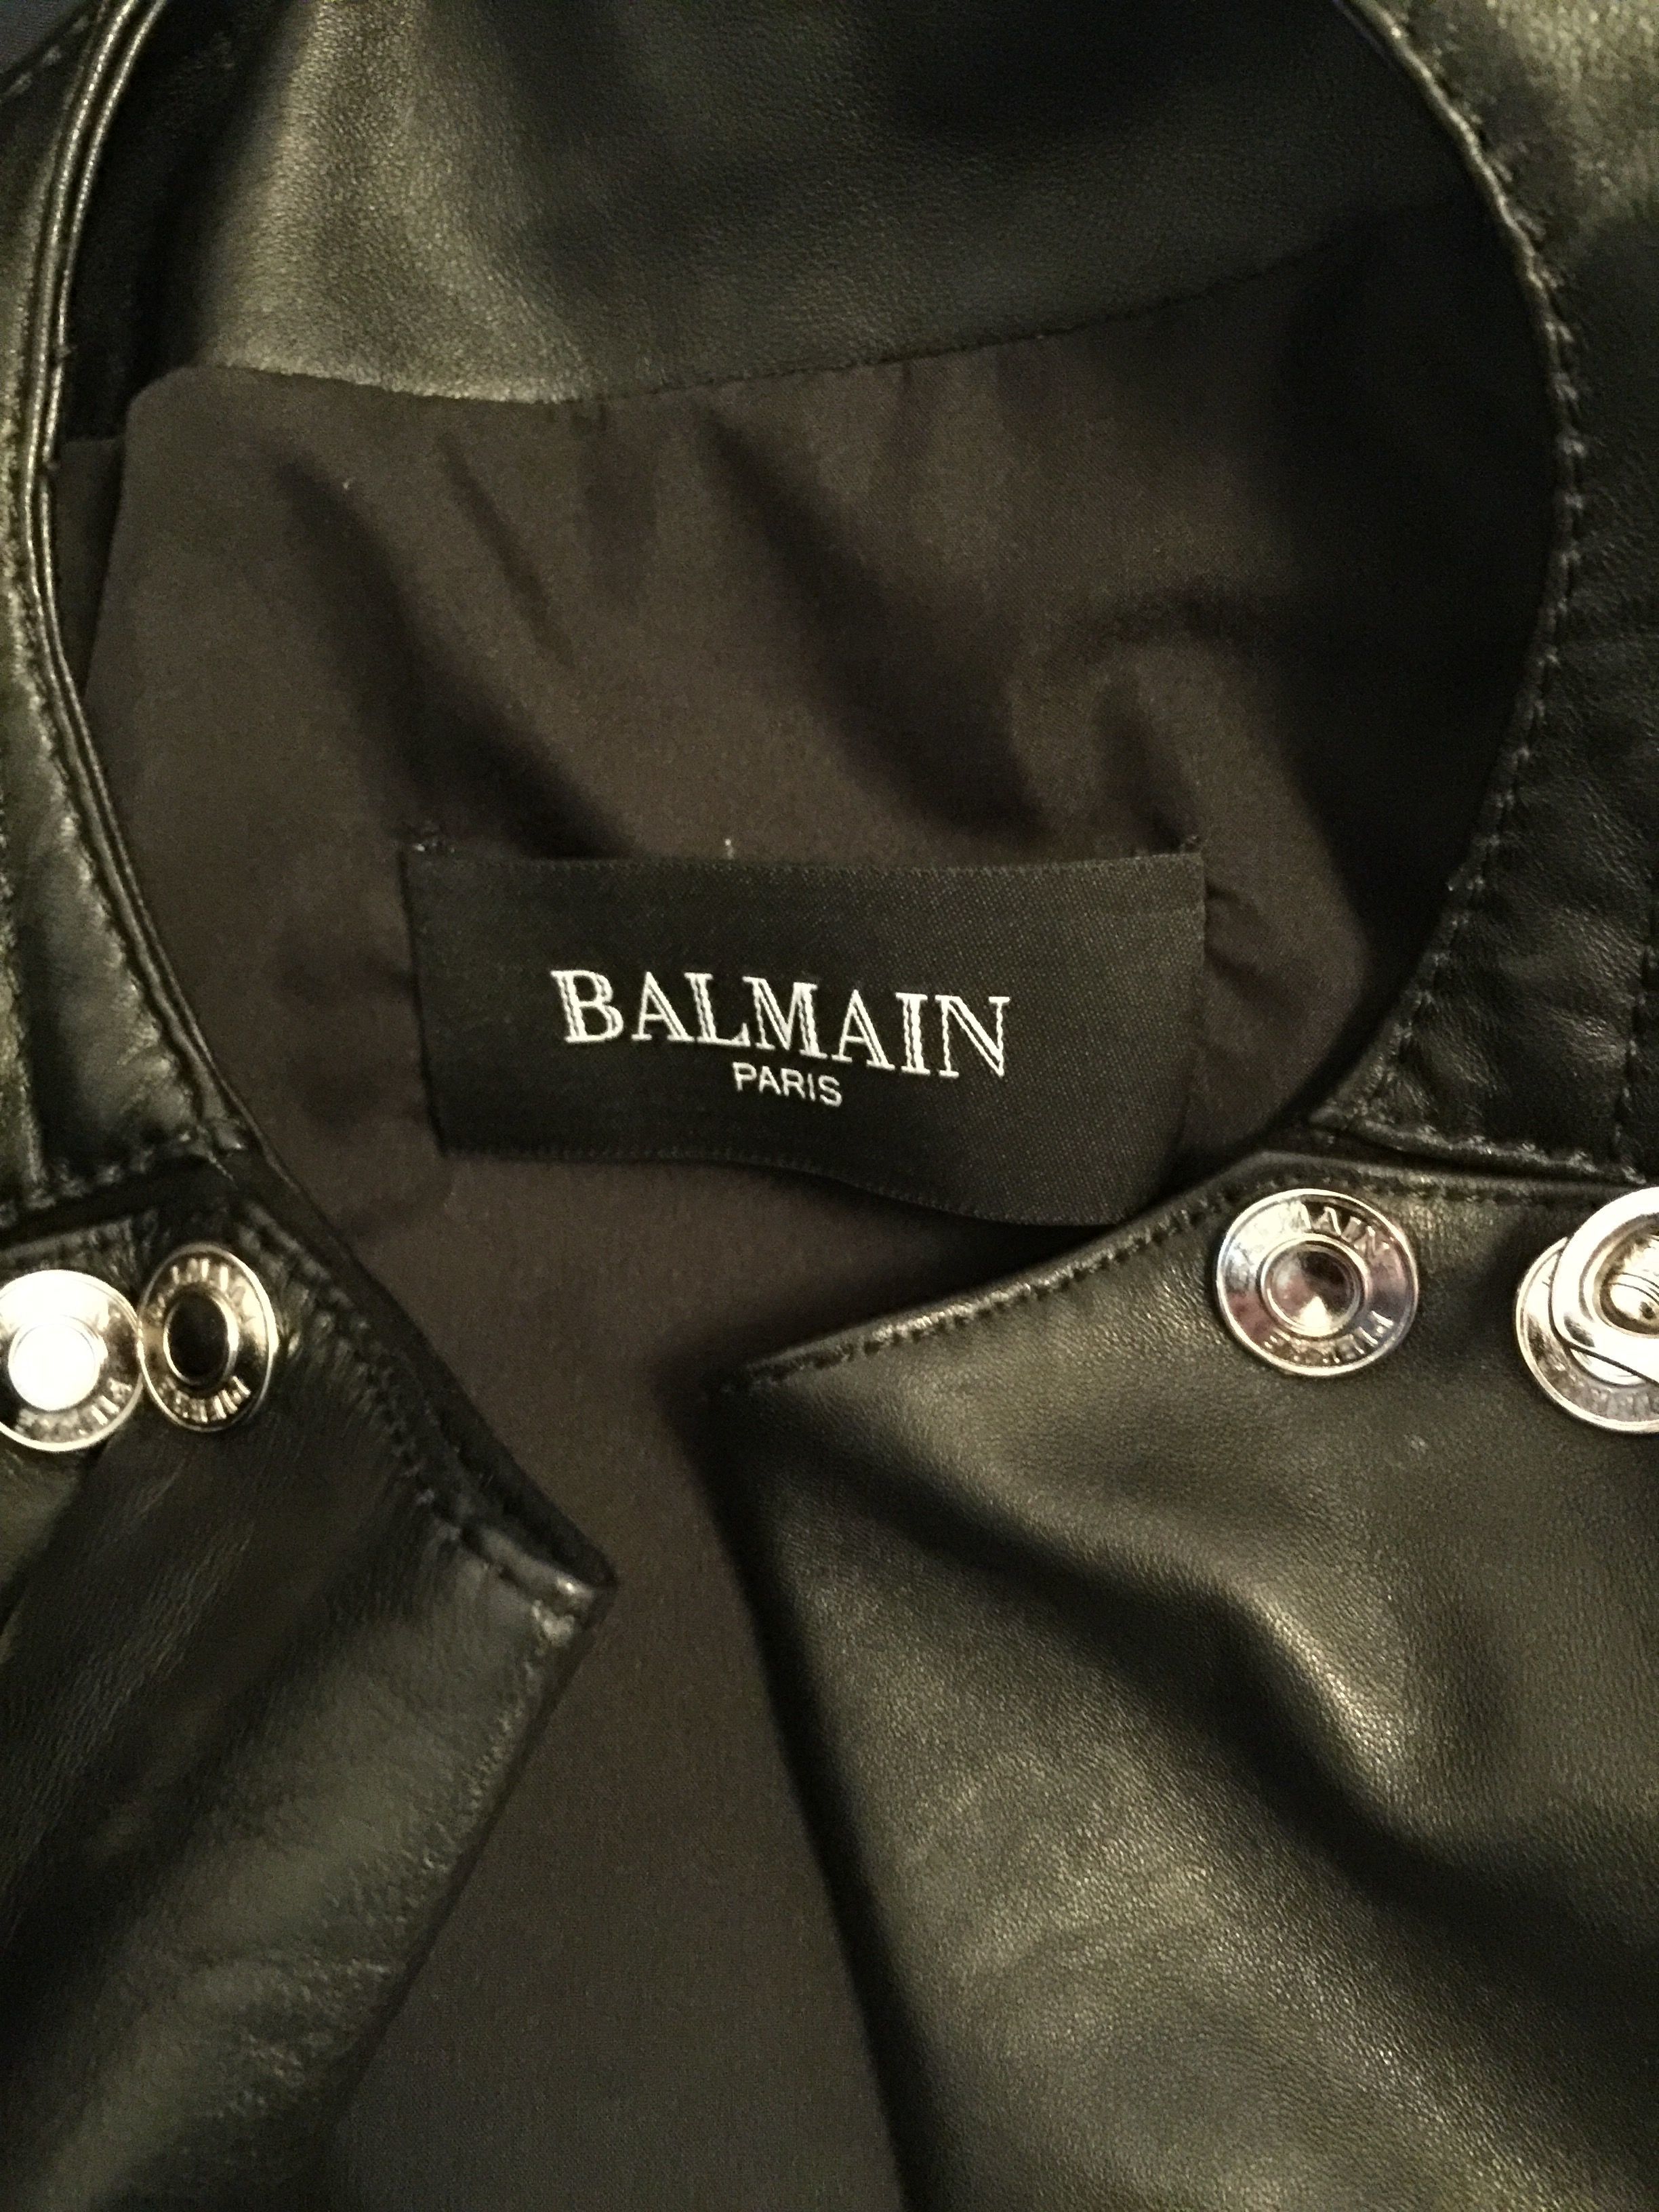 real or fake balmain jacket Styleforum